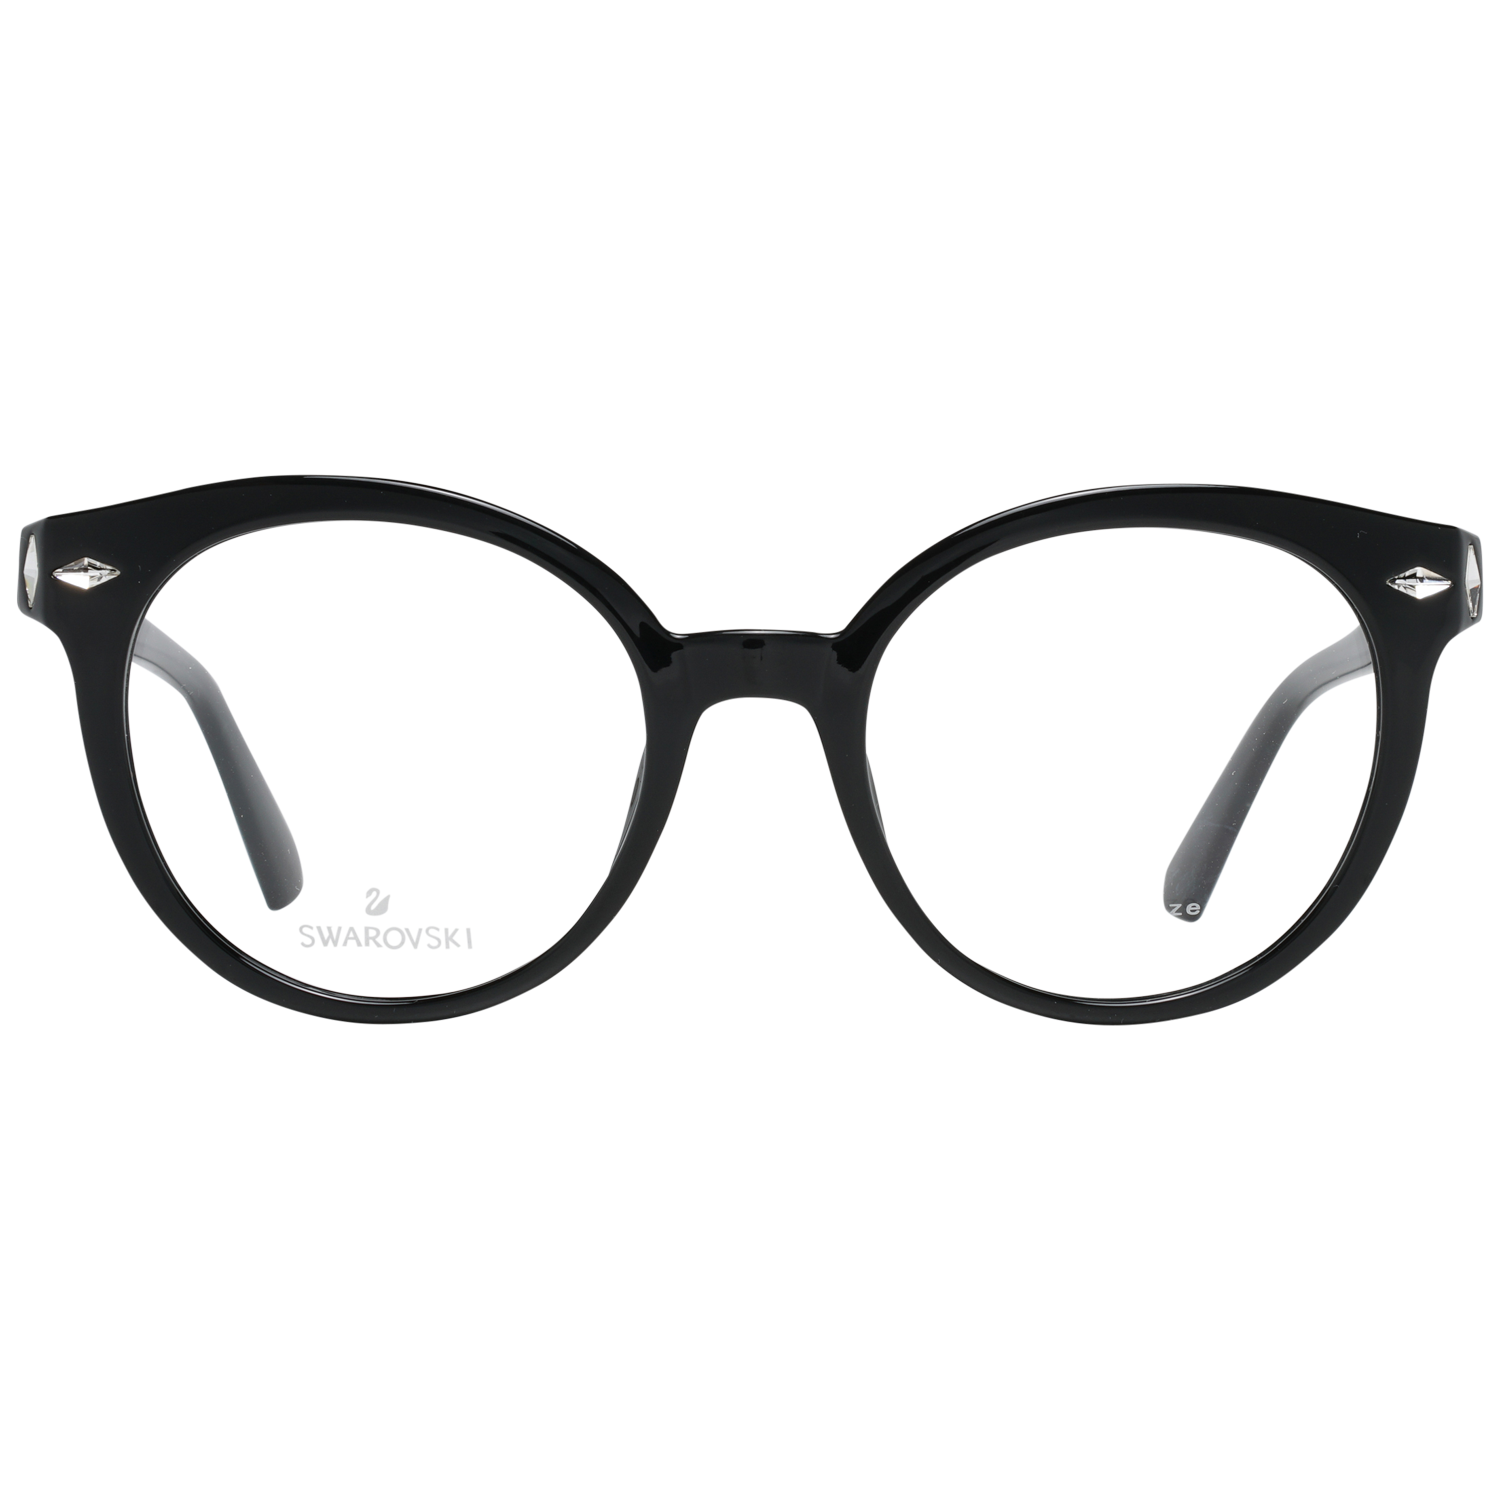 Swarovski Frames Swarovski Women Glasses Optical Frame SK5272 001 50 Eyeglasses Eyewear UK USA Australia 